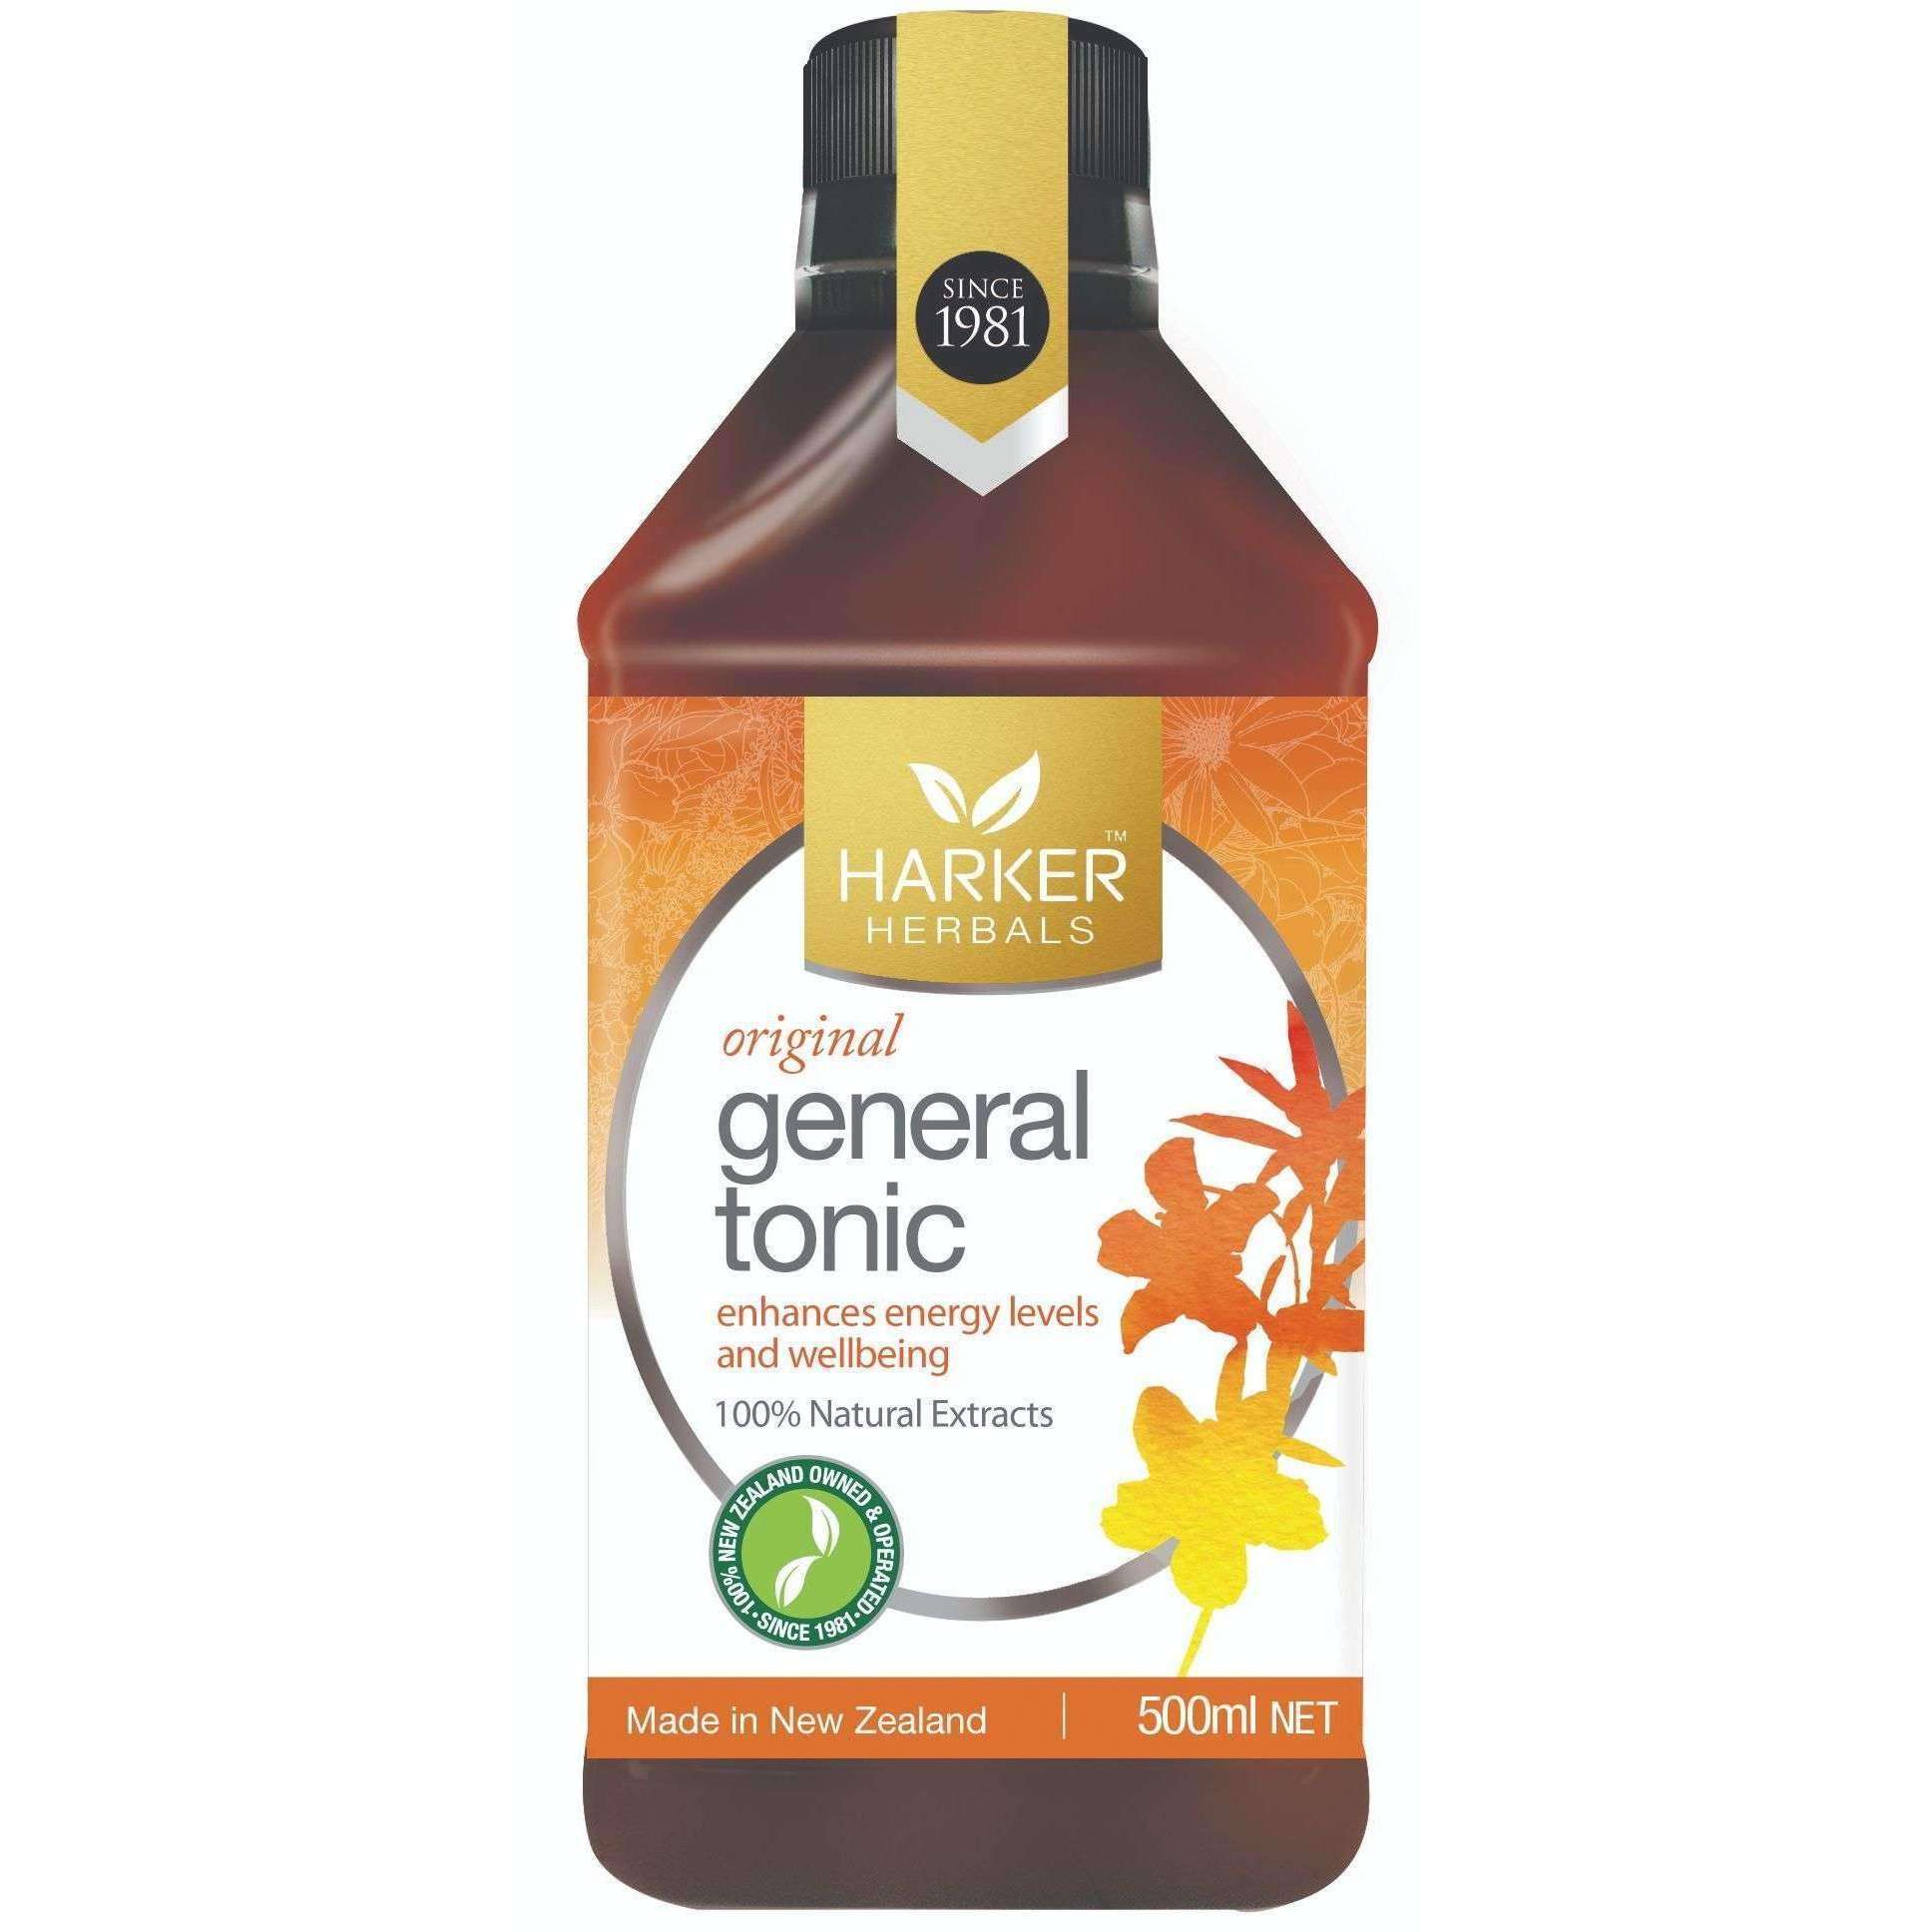 Harker Herbals General Tonic